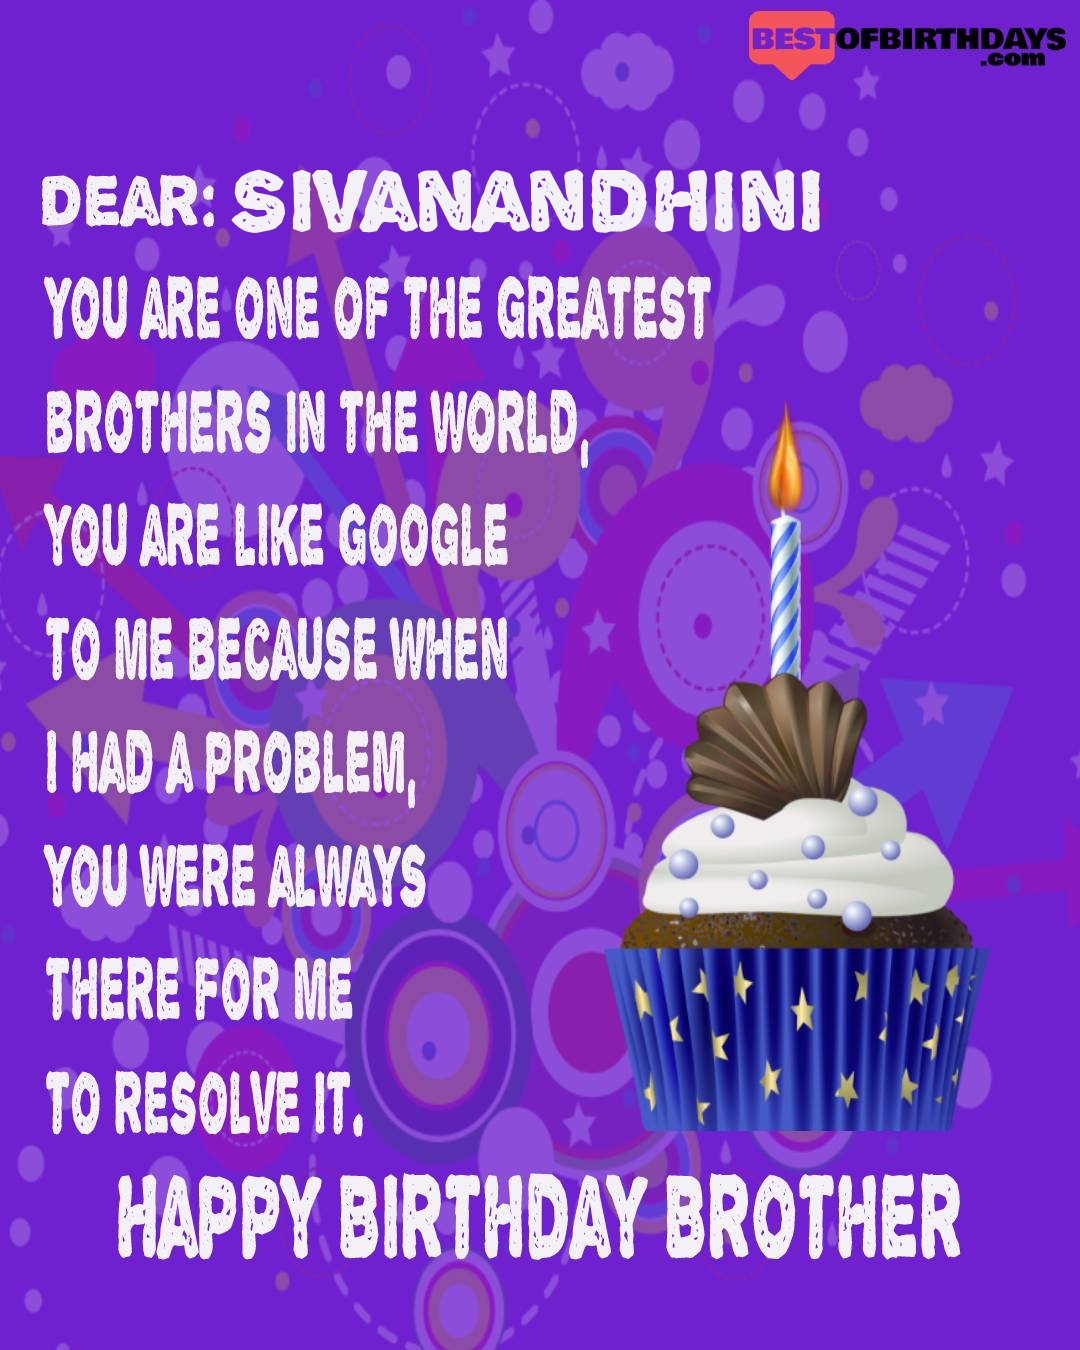 Happy birthday sivanandhini bhai brother bro